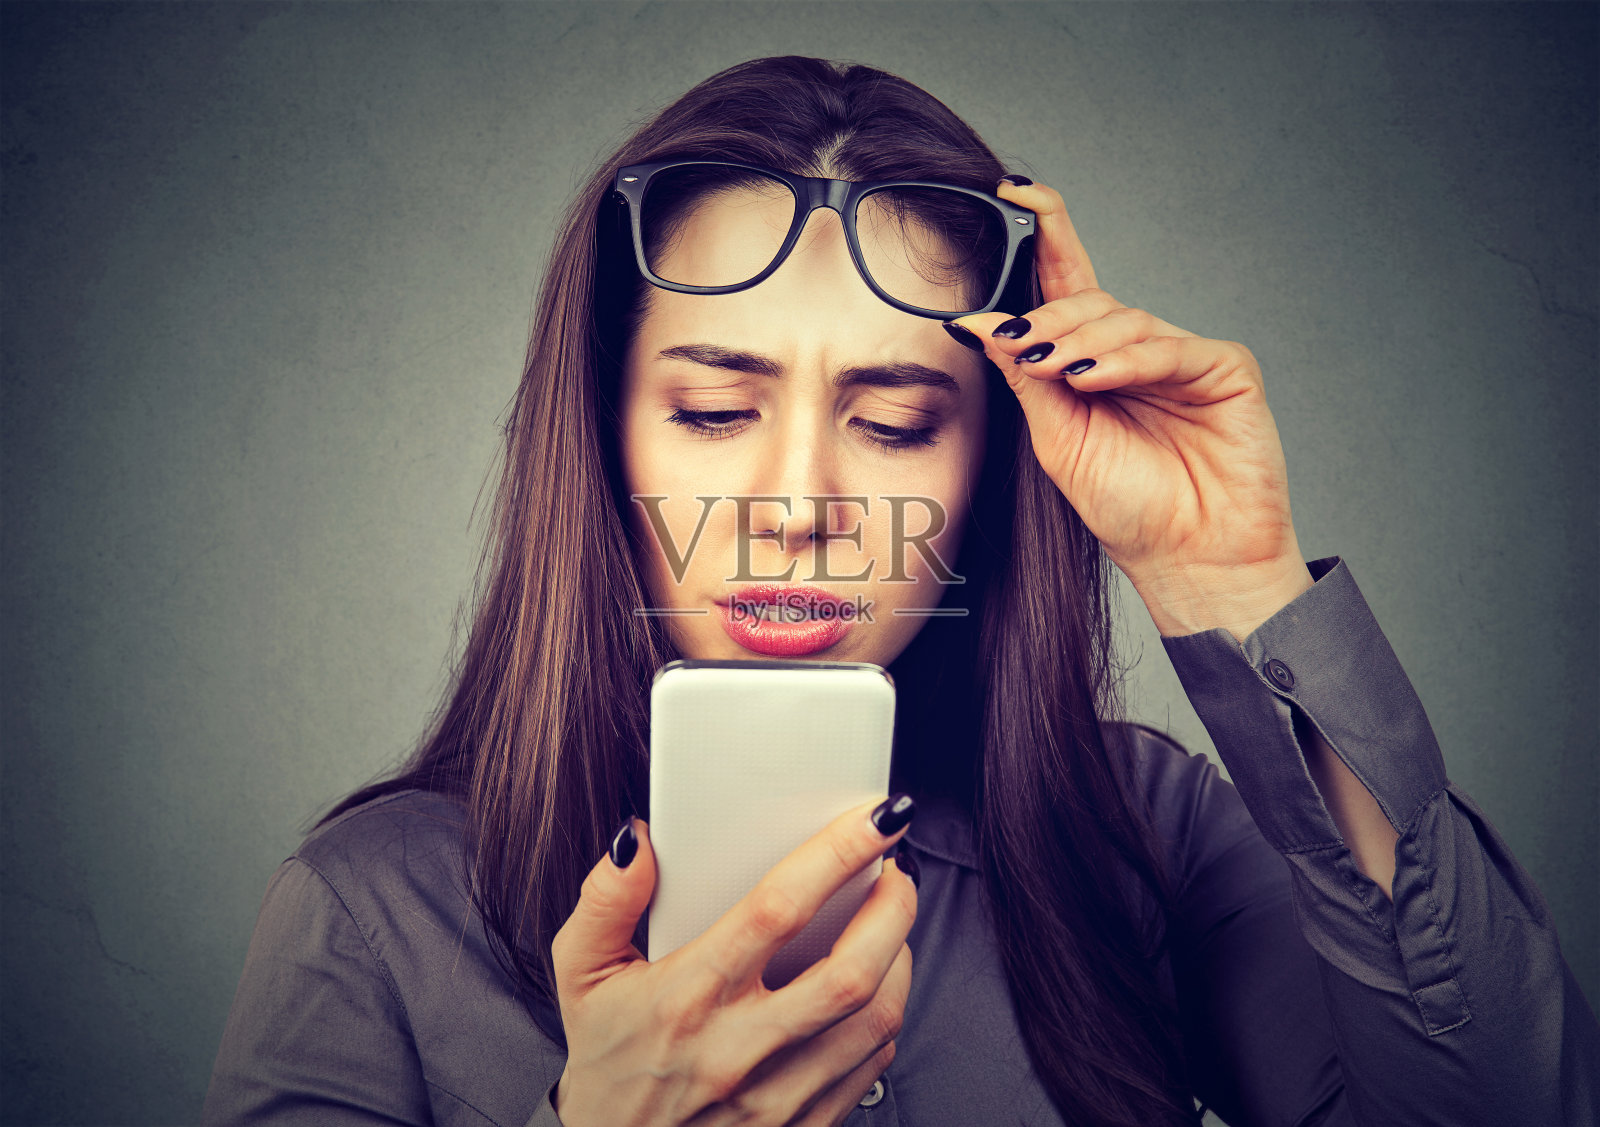 戴眼镜看不清手机的女性有视力问题照片摄影图片